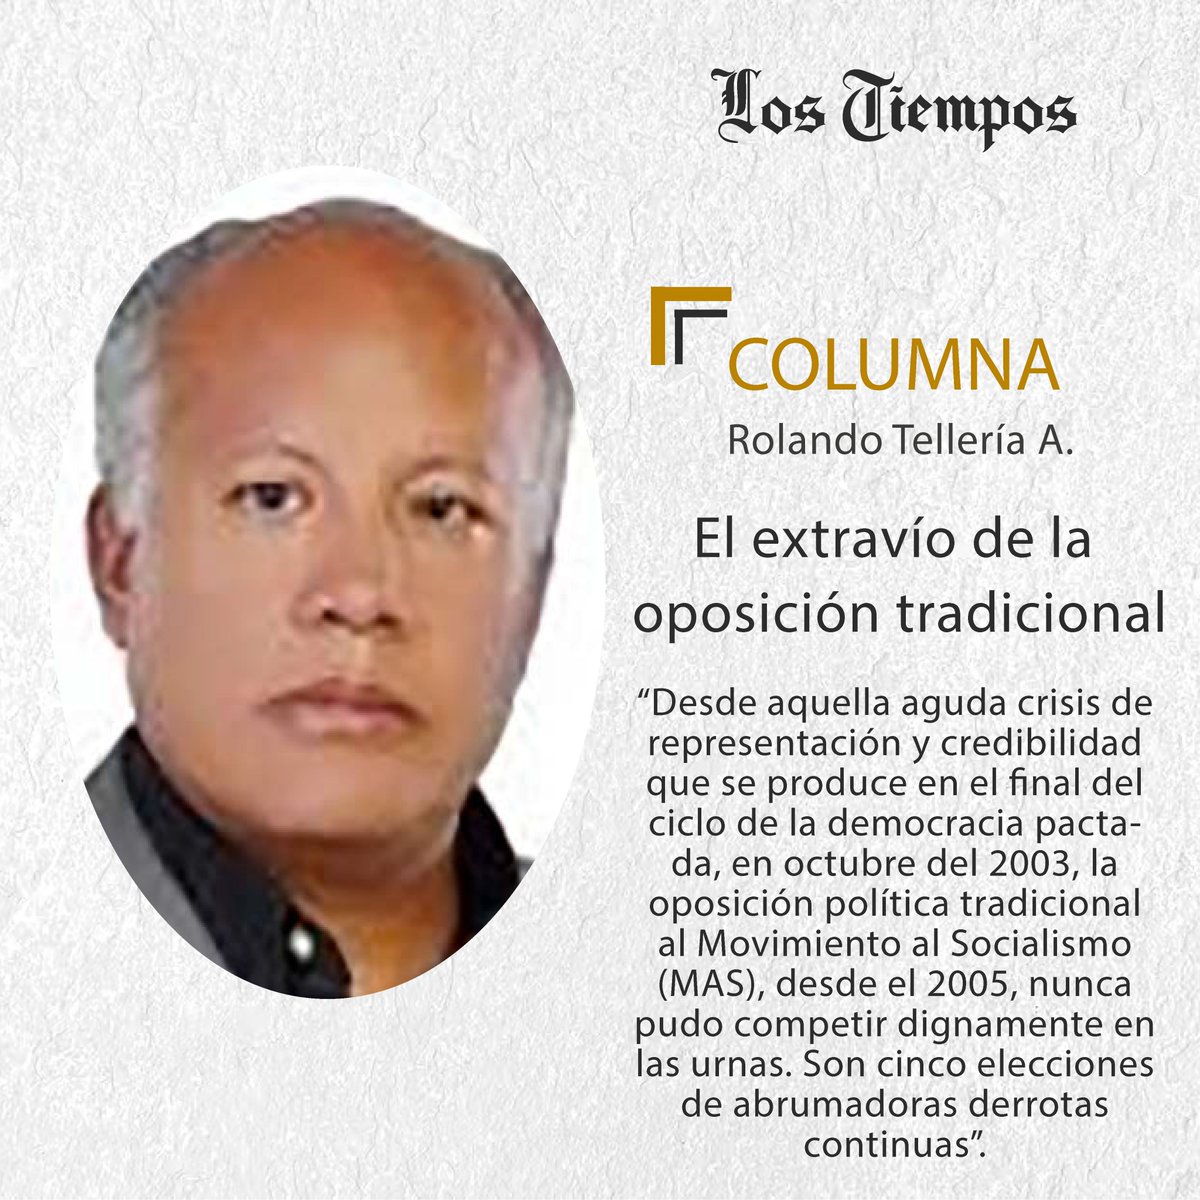 #LTColumna #Puntos de Vista
Lea la columna de Rolando Tellería A.
👉 lc.cx/CyMm0P